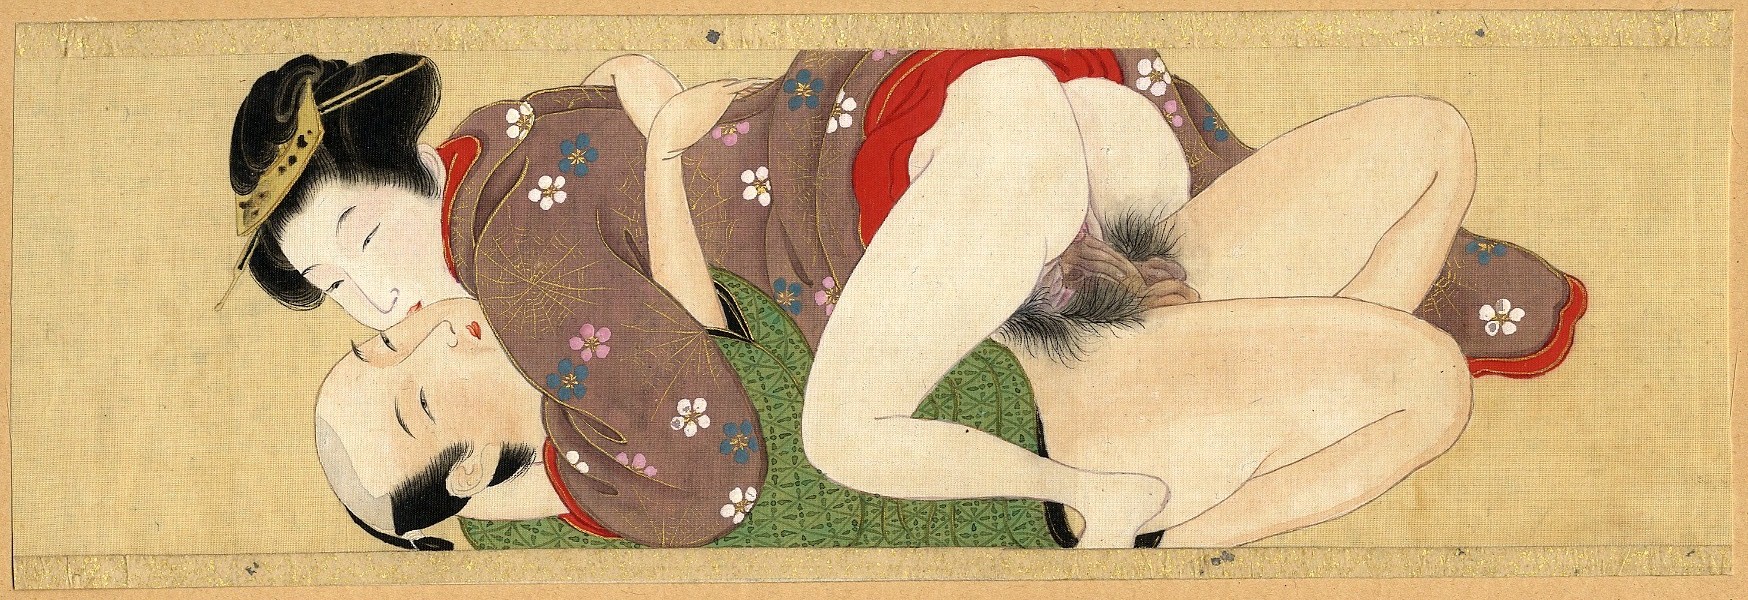 японская эротика со смыслом фото 119